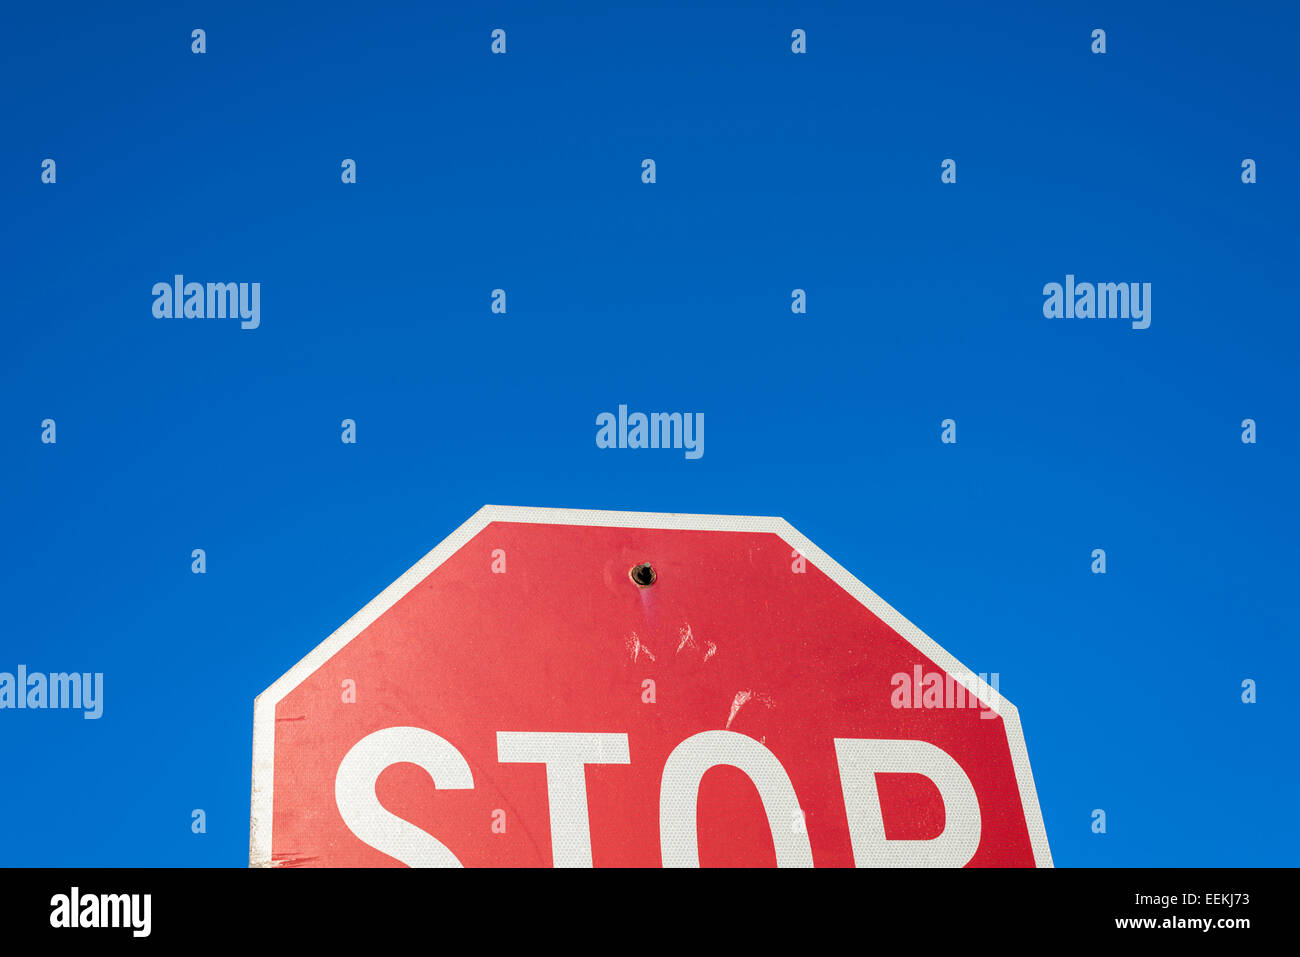 Imagen conceptual mostrando una mitad de una señal de stop. Foto de stock